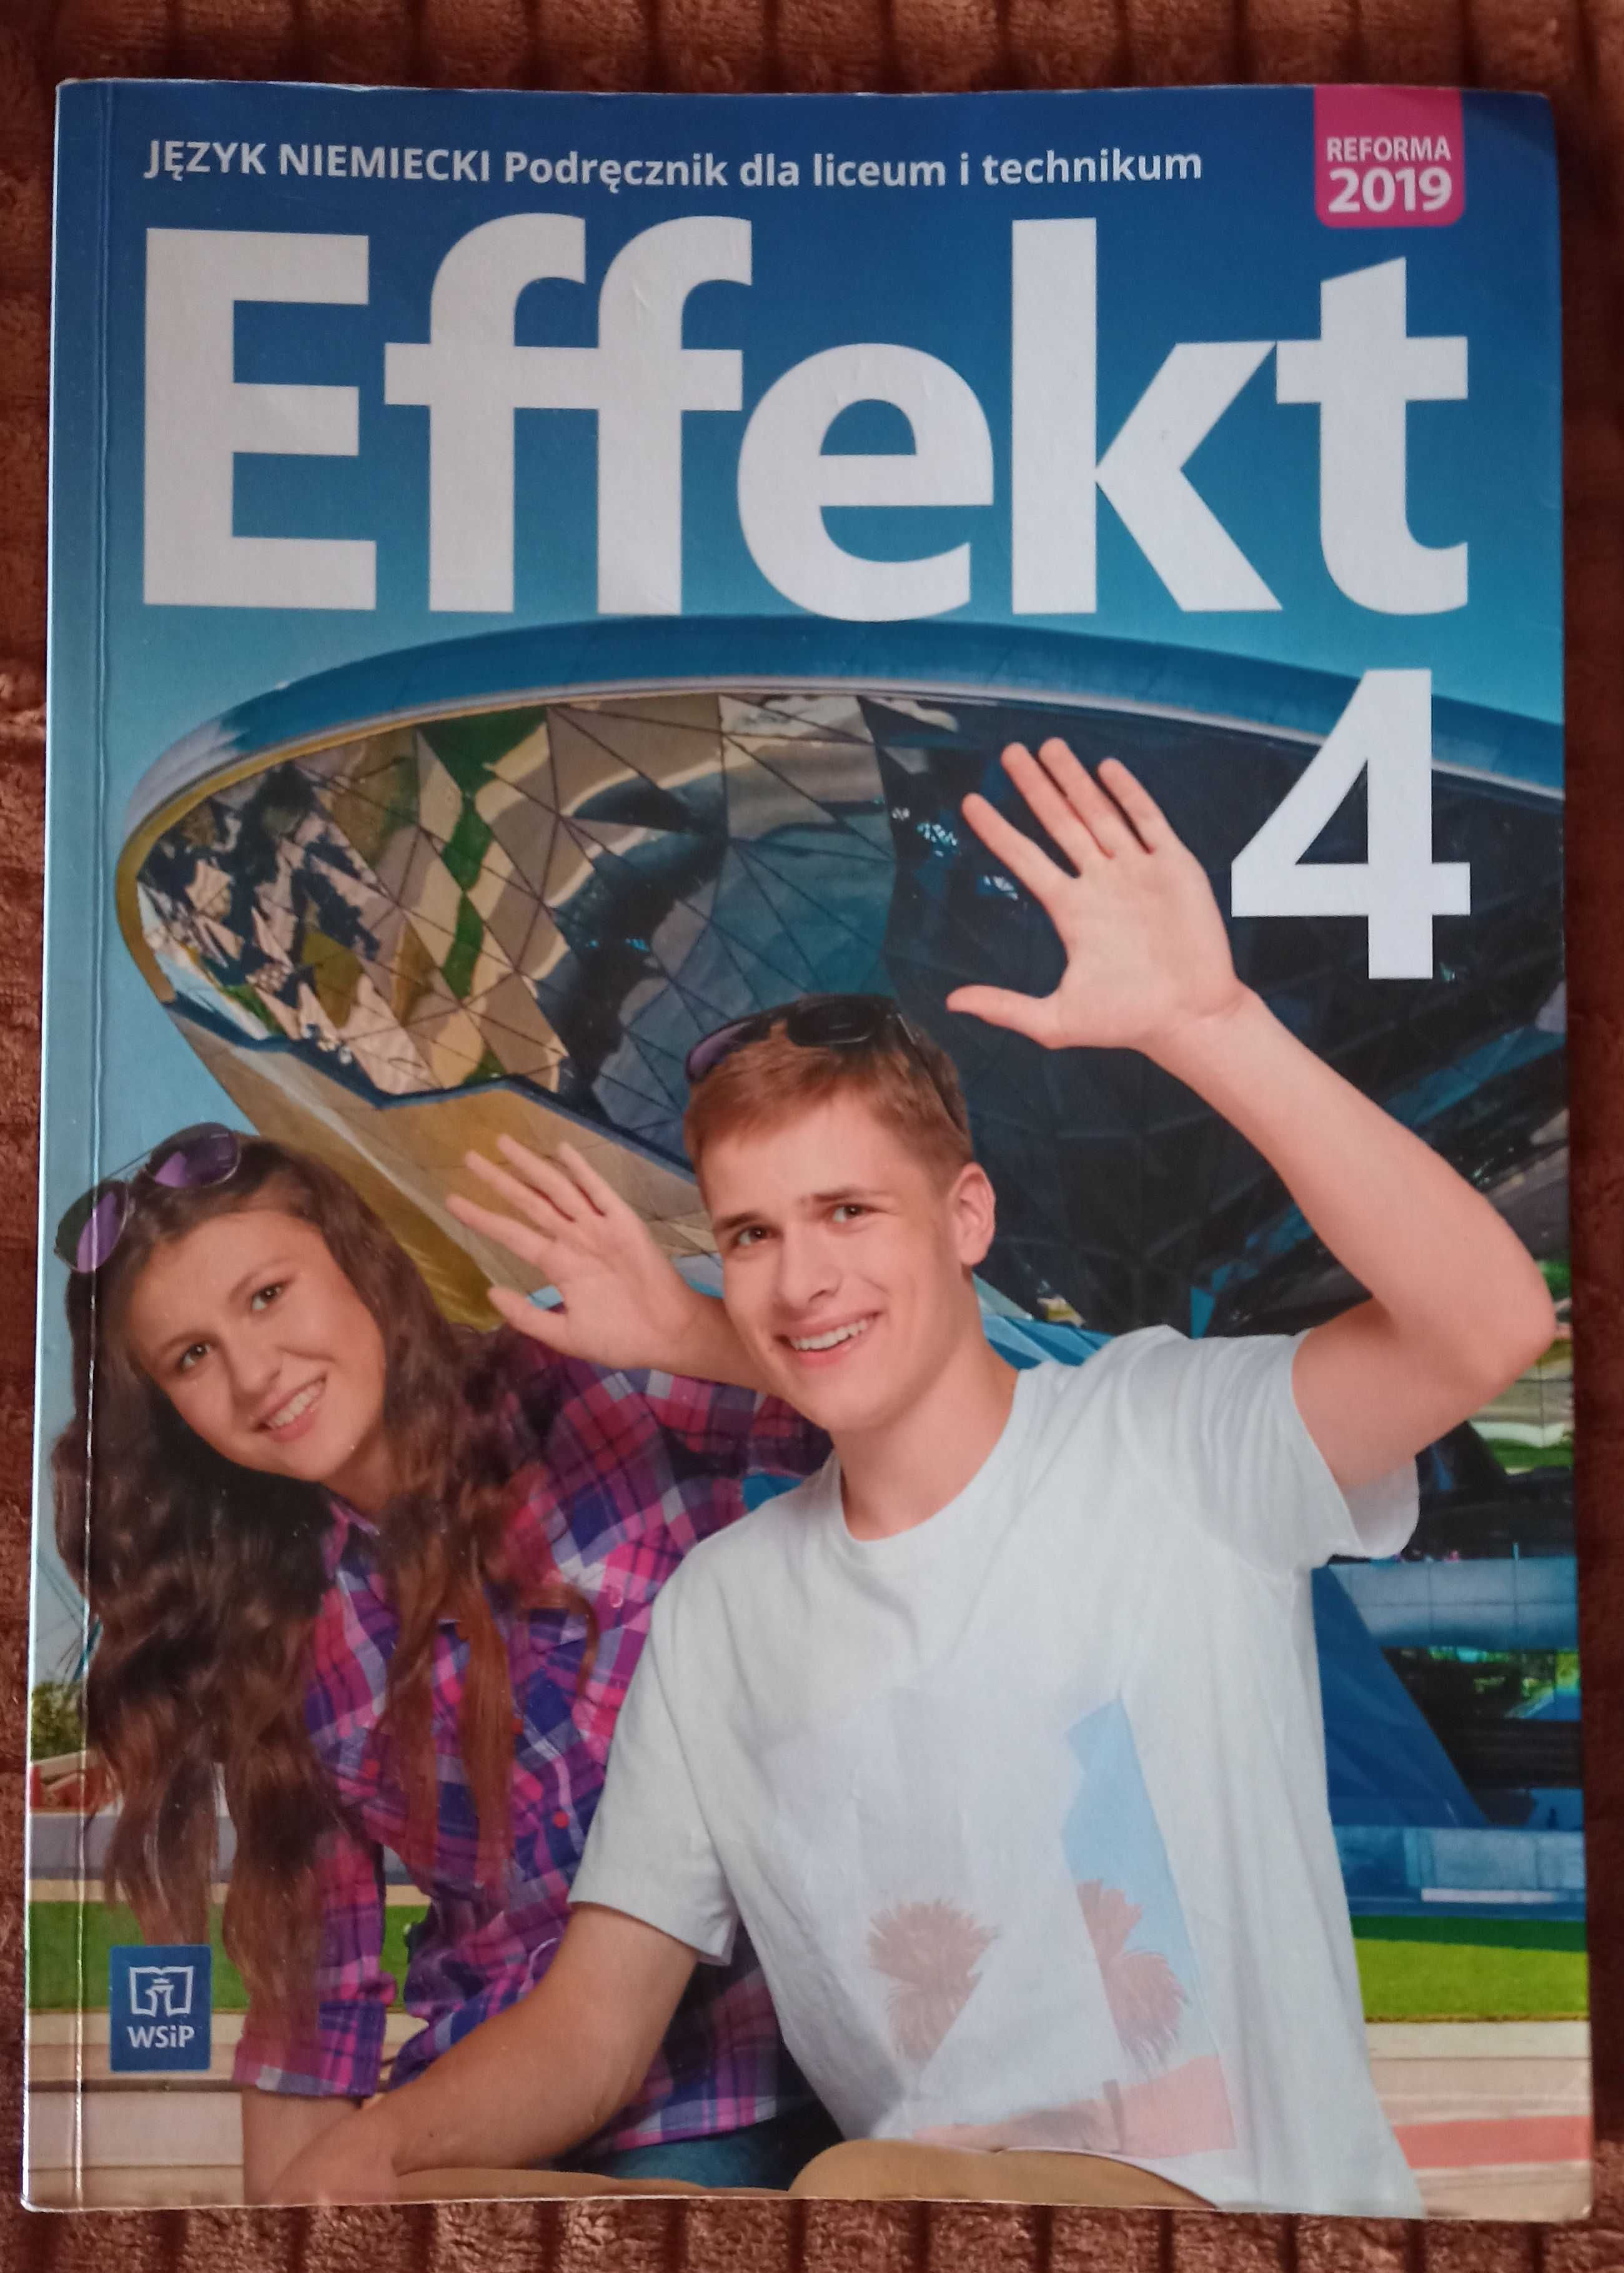 Effekt 4 język niemiecki podręcznik dla liceum i technikum